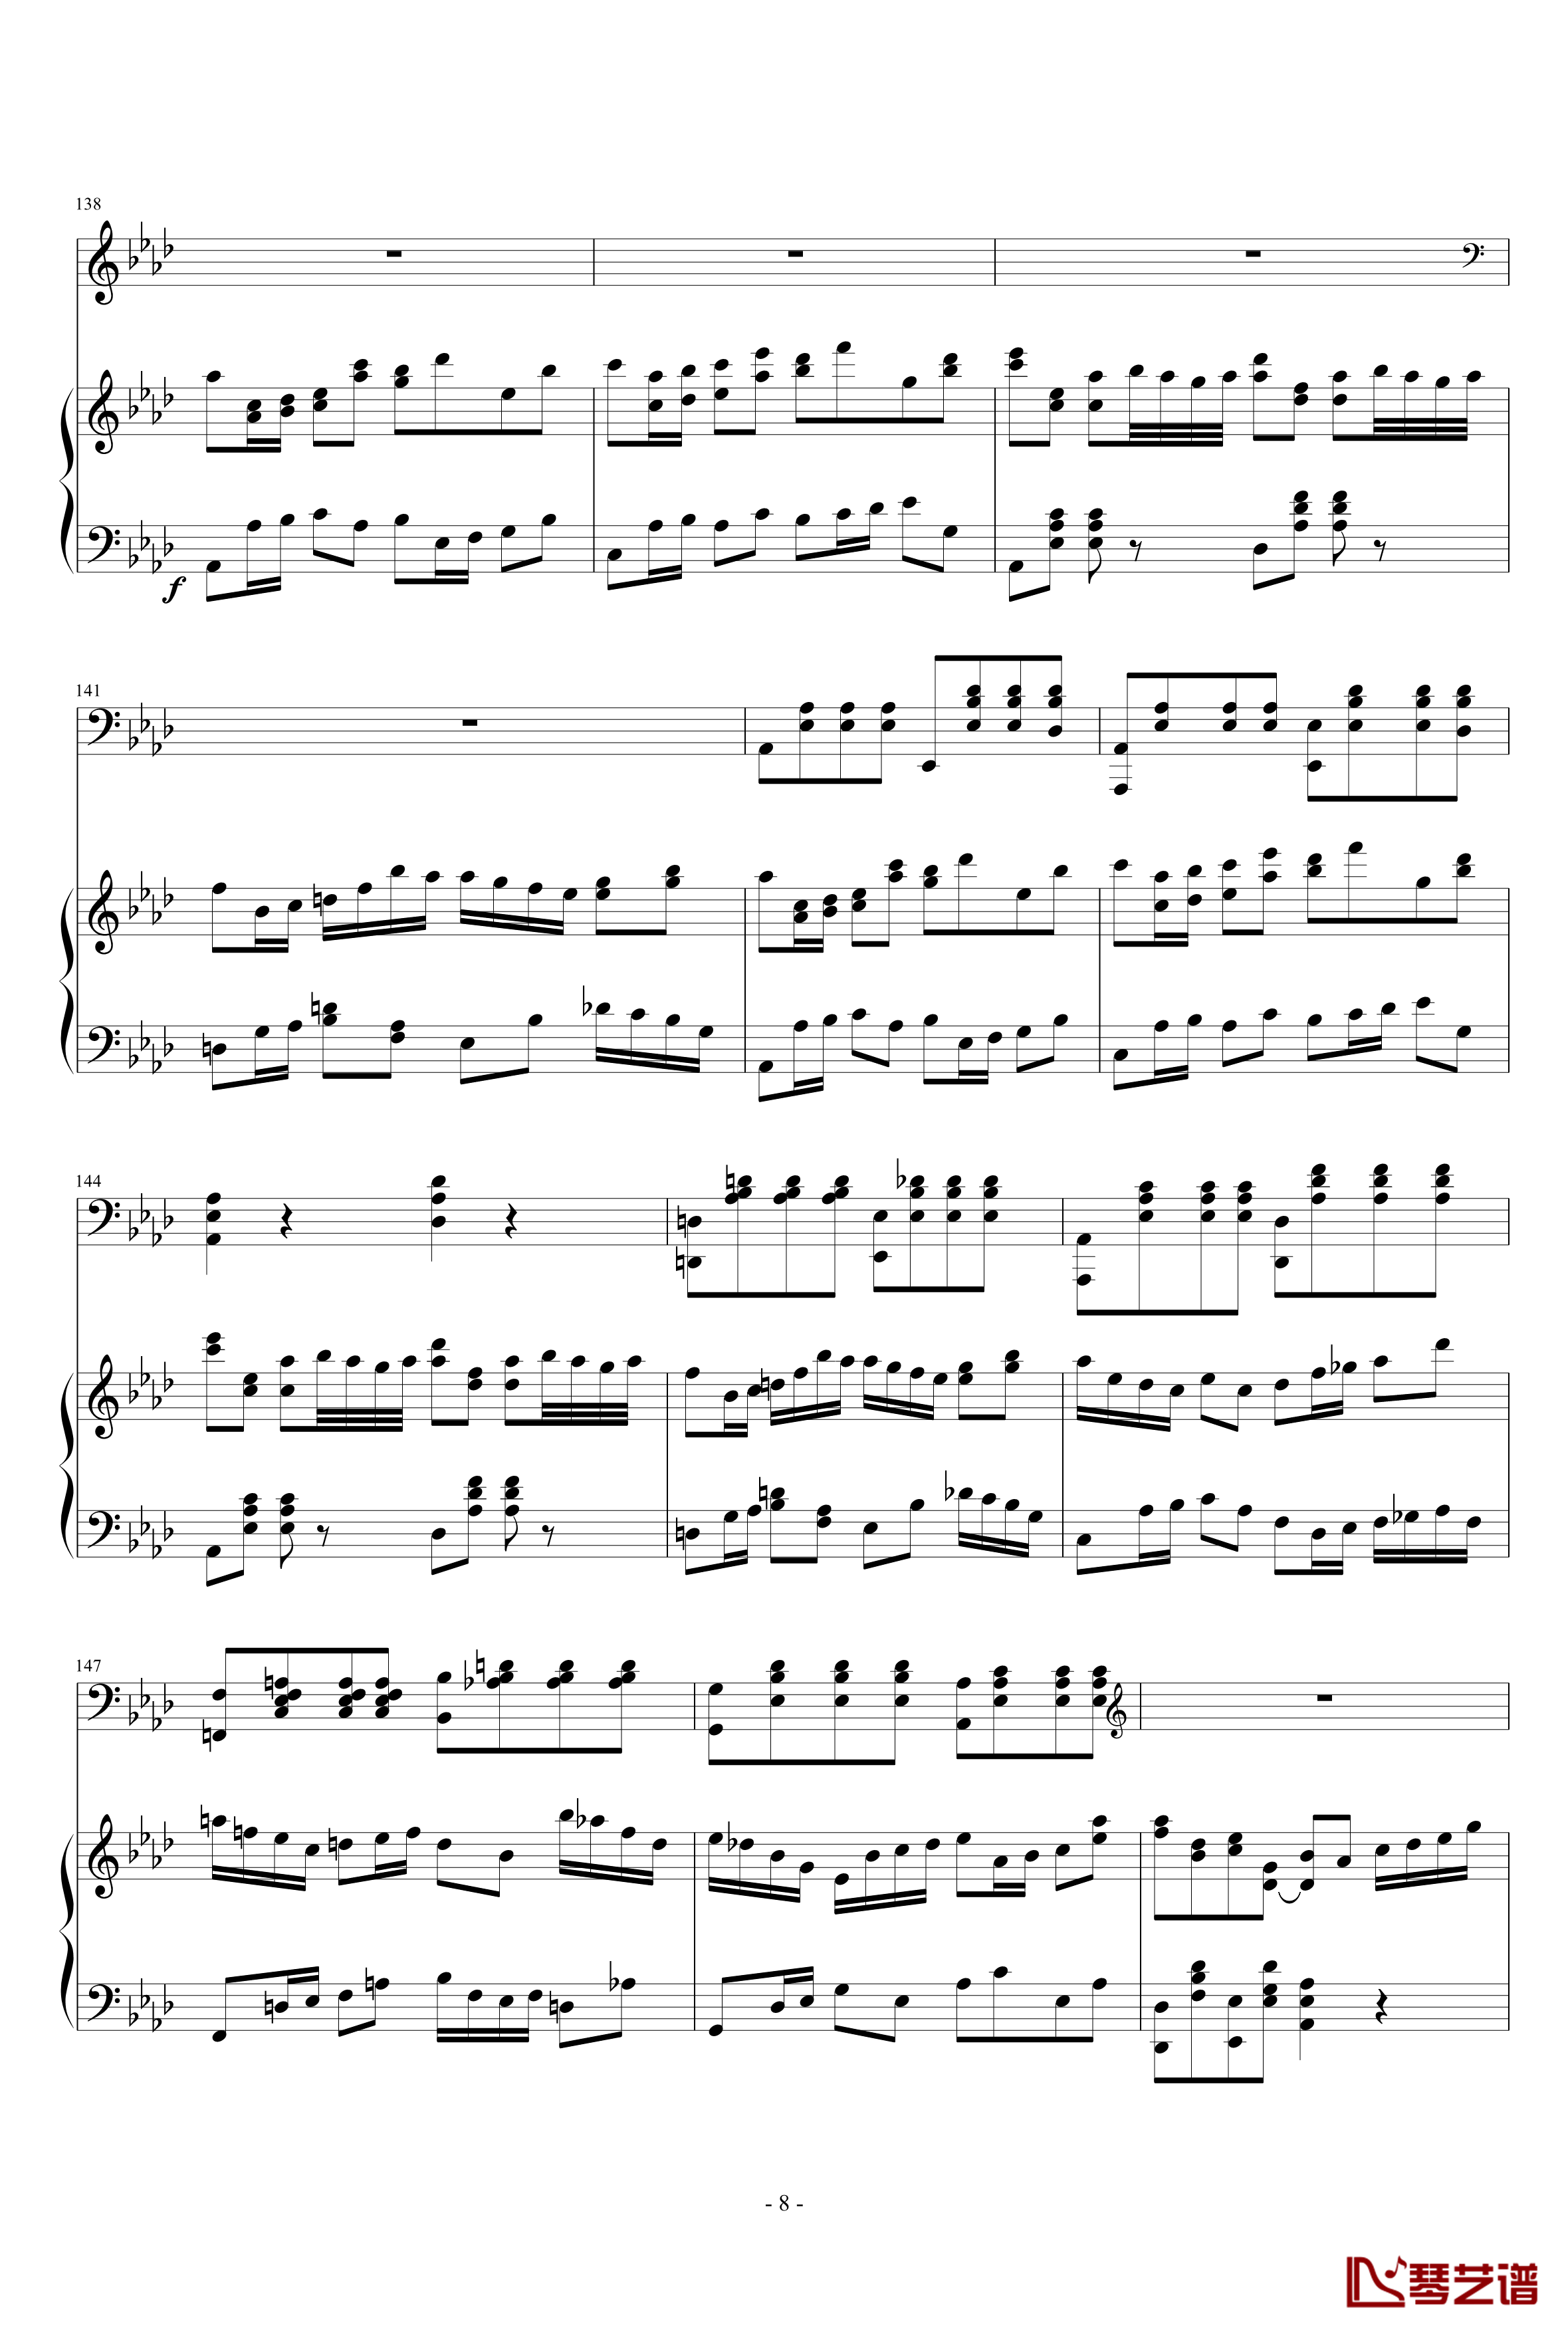 2013考试周的叙事曲钢琴谱-江畔新绿8